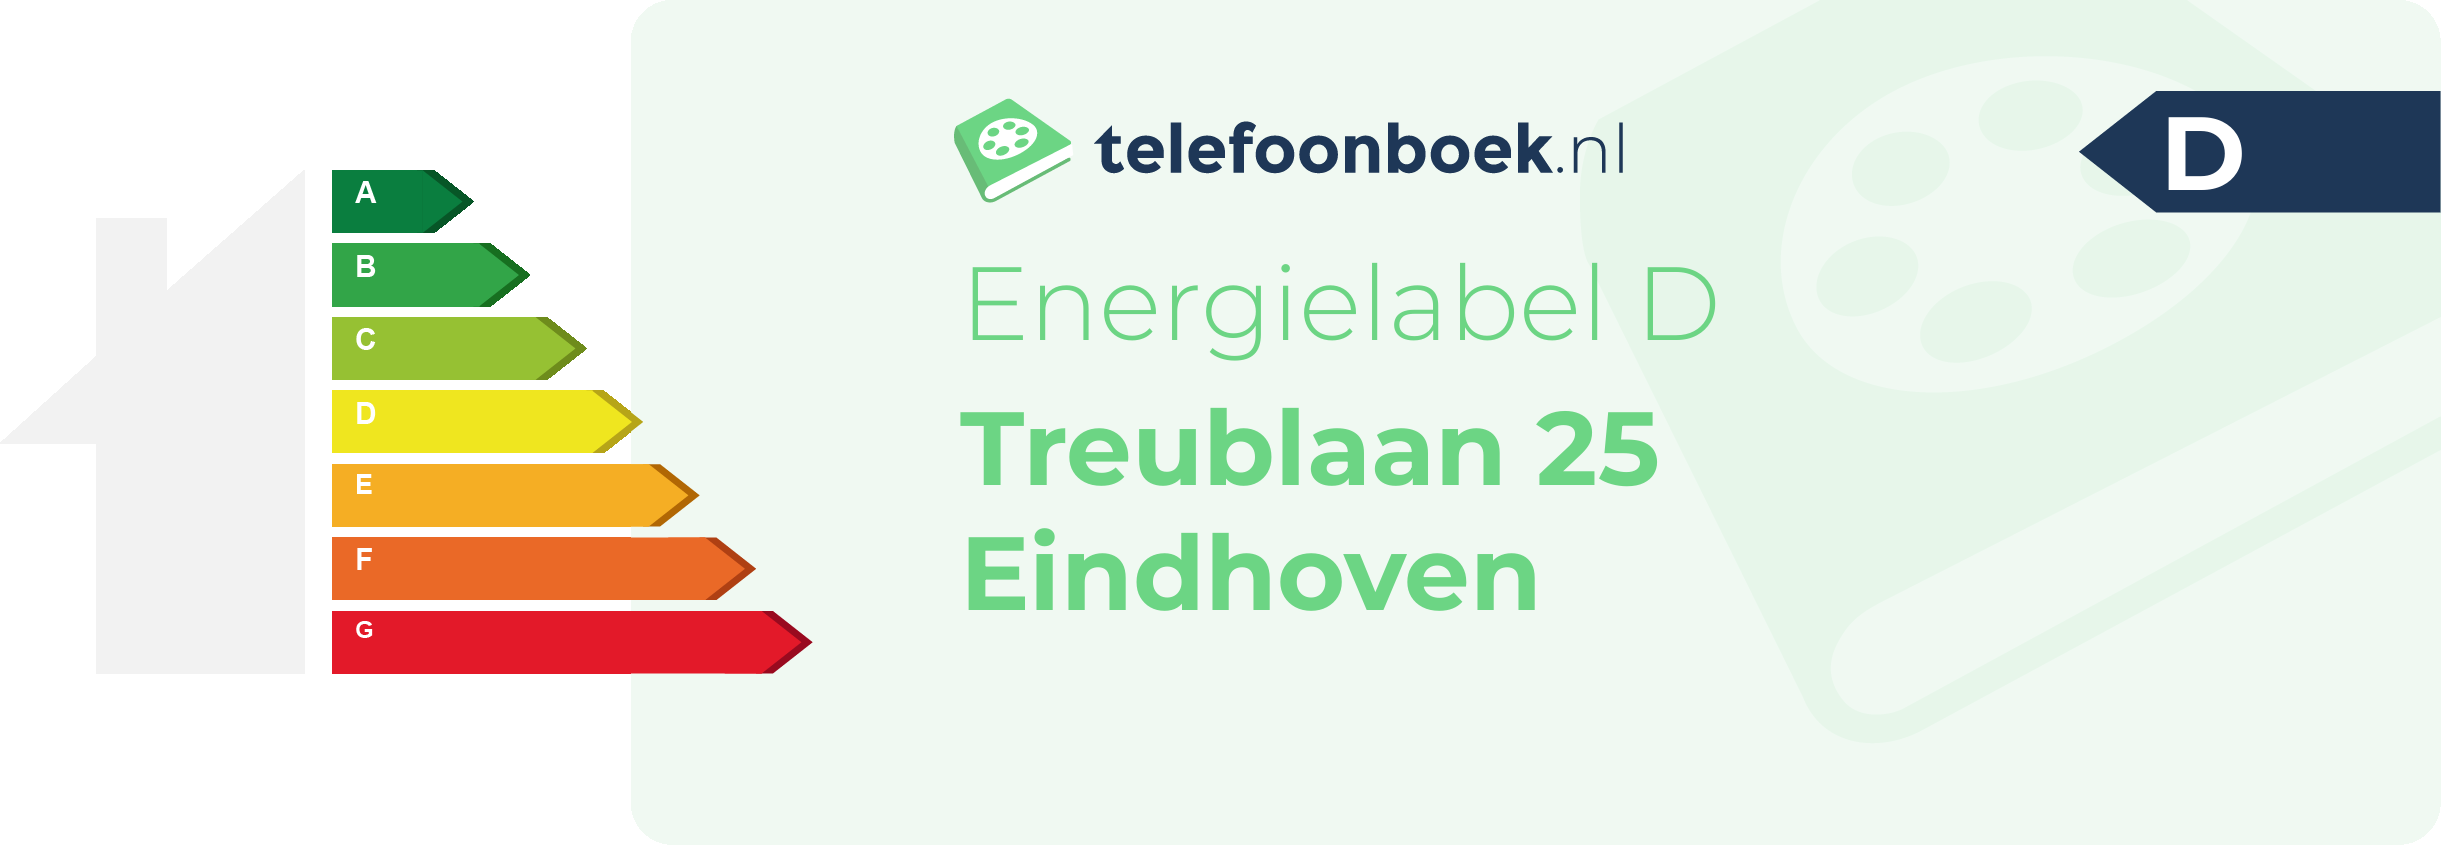 Energielabel Treublaan 25 Eindhoven